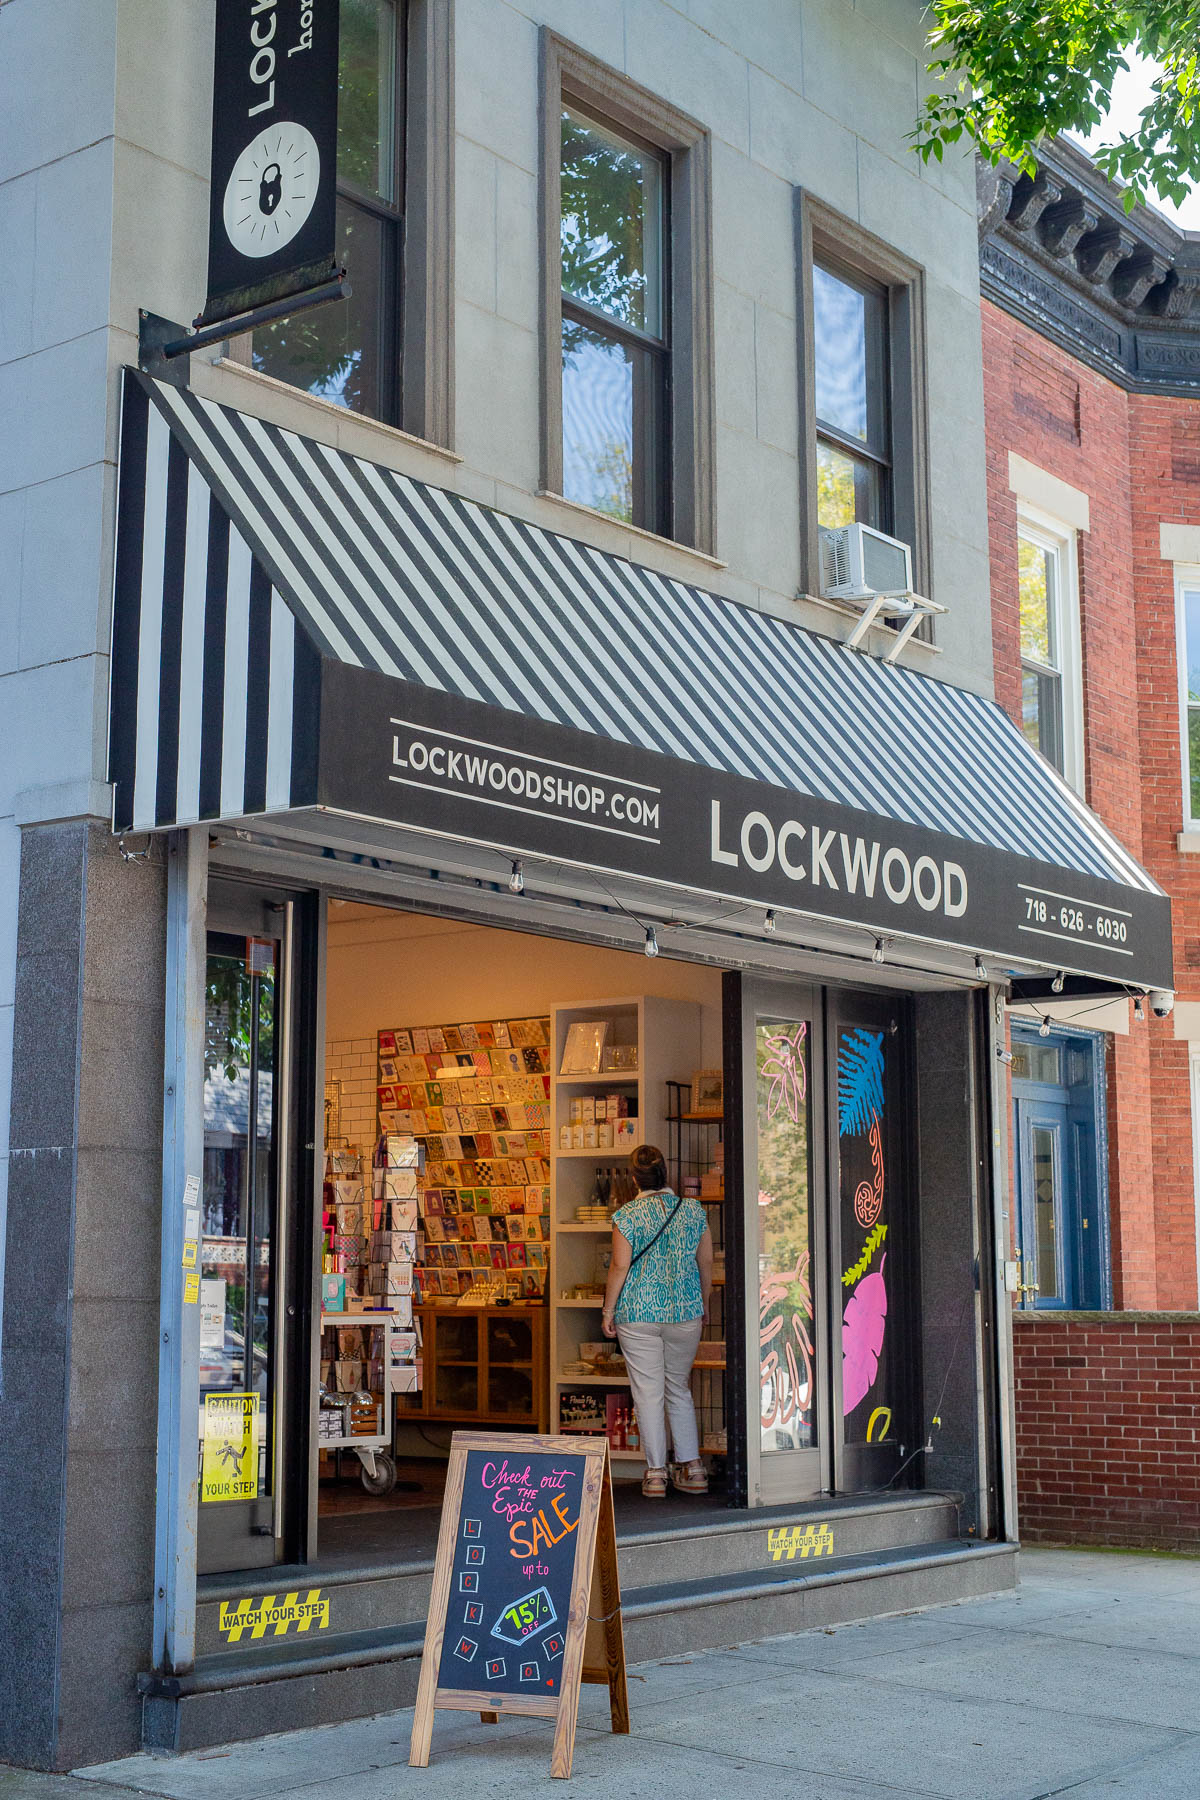 Lockwood Store in Astoria, Queens, visiting Astoria Queens